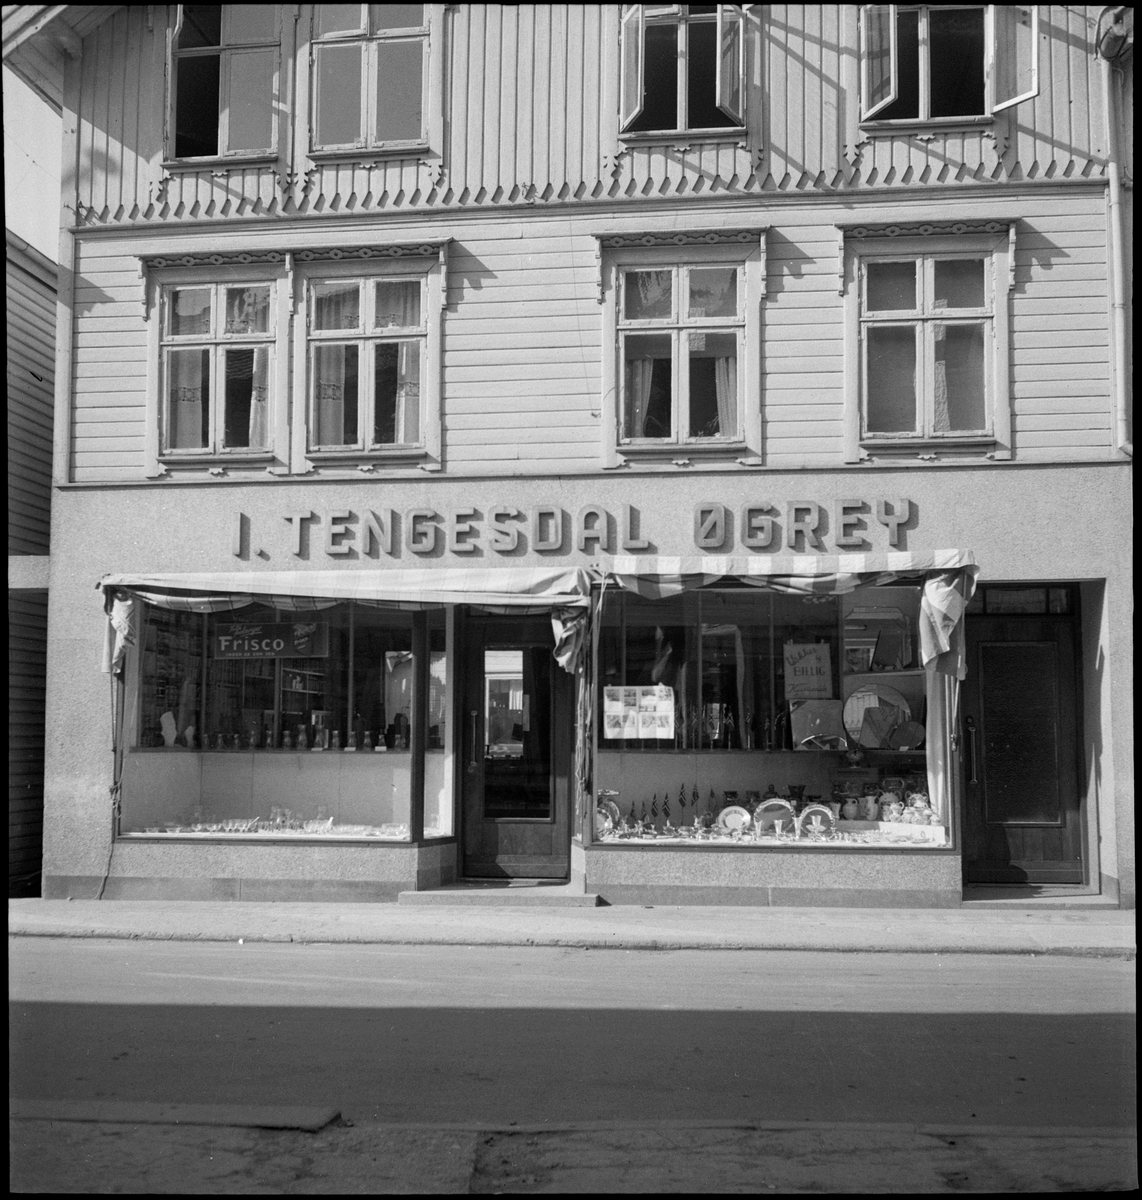 Kjøkkenbutikken "I. Tengesdal Øgrey" i Egersund. Det er glass, keramikk, serveringsfat og flagg i utstillingsviduene.